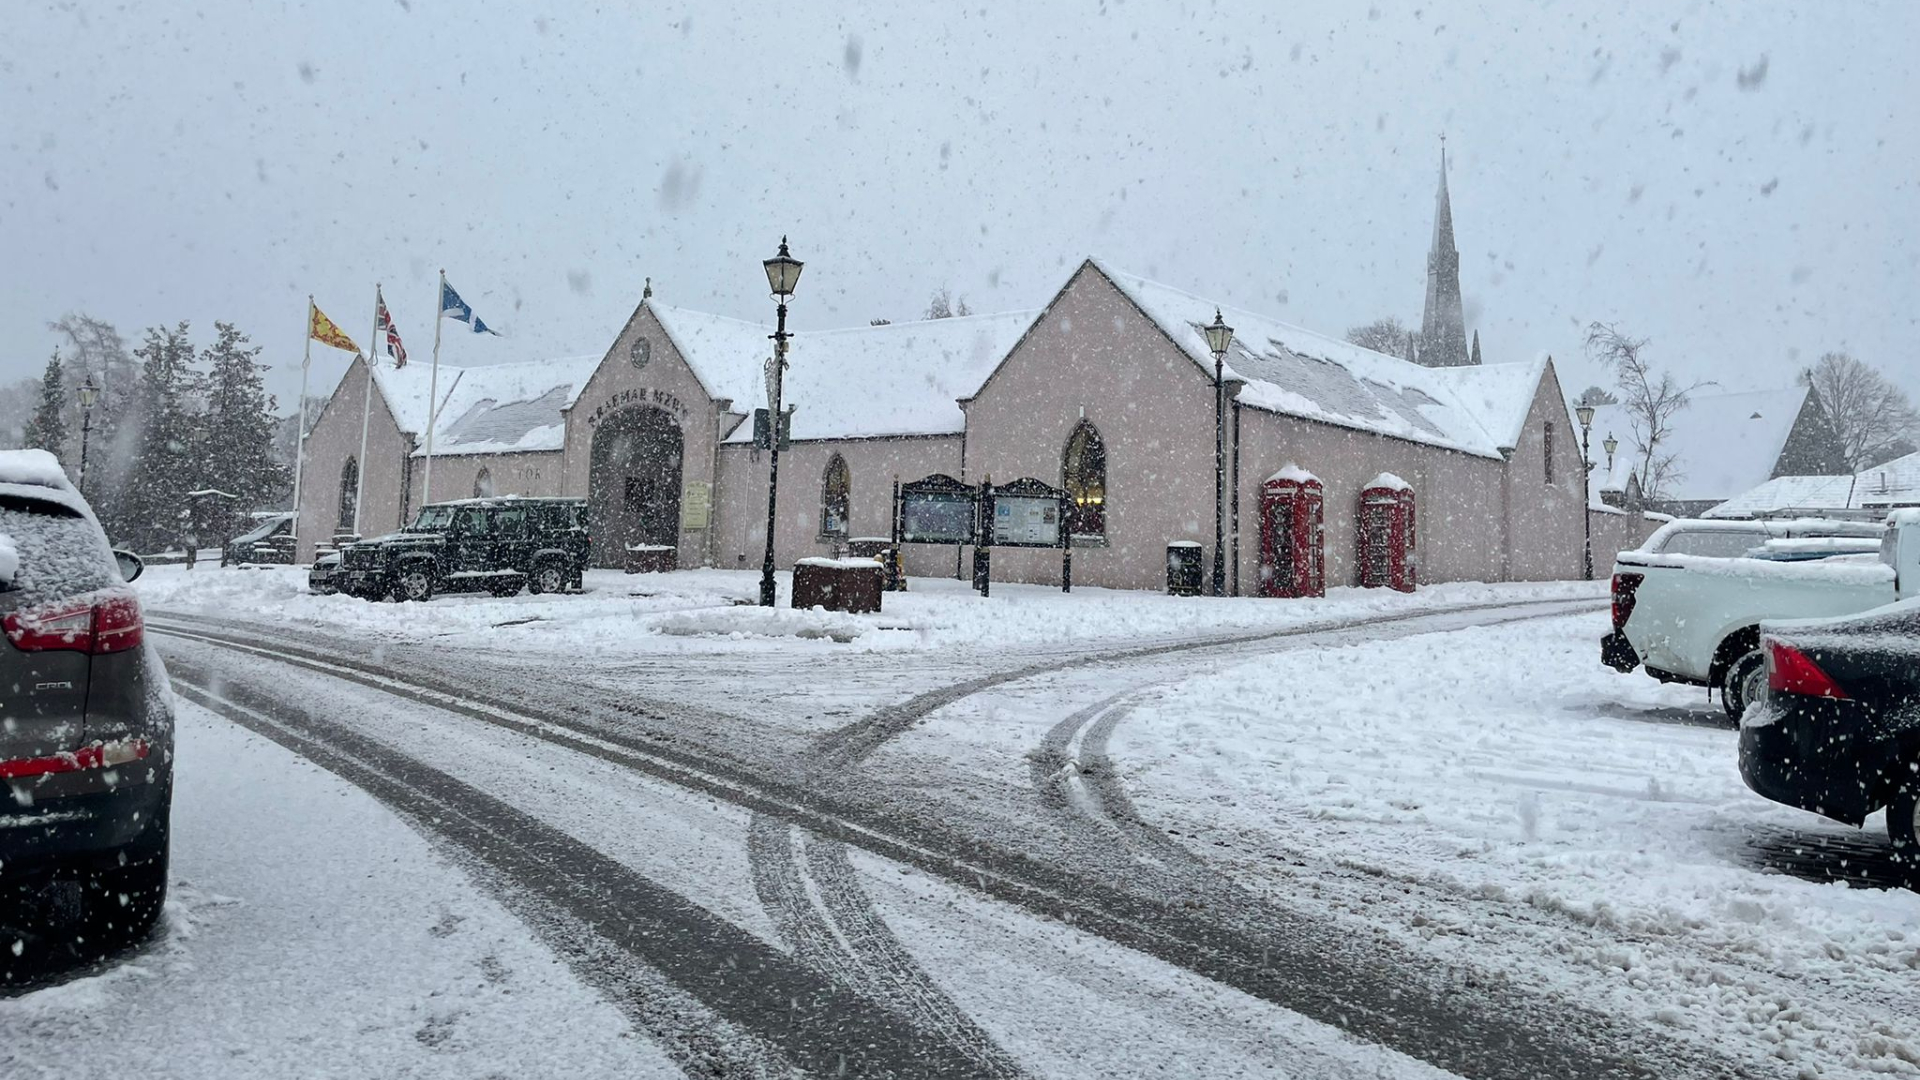 Snowy scenes in Braemar